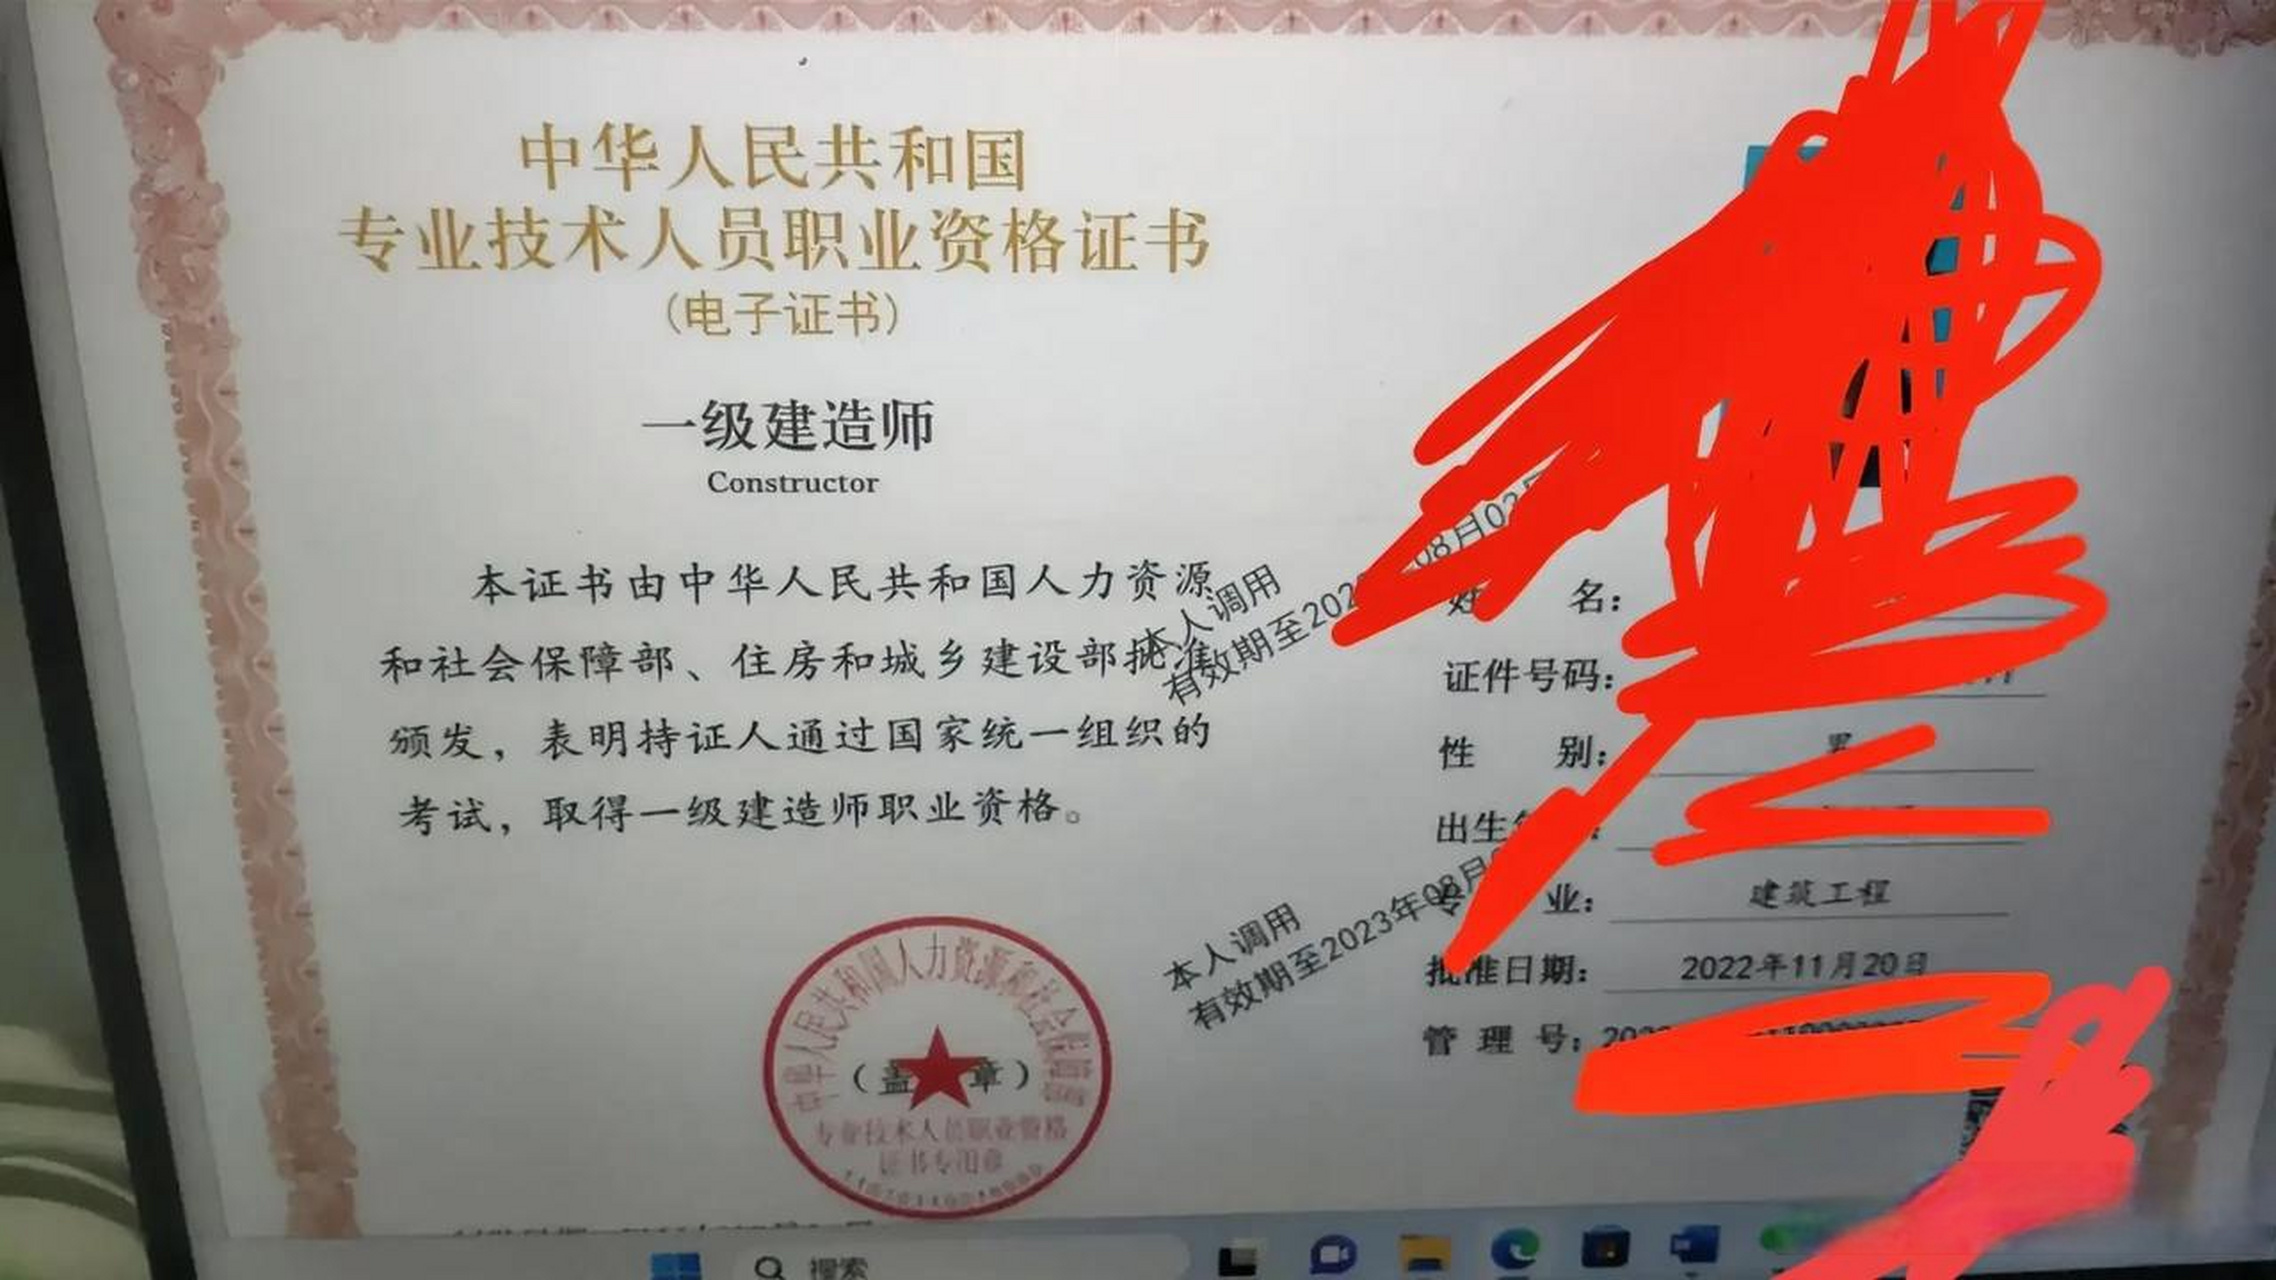 中国人事考试网一级建造师电子证书已出,直接上图晚睡的惊喜